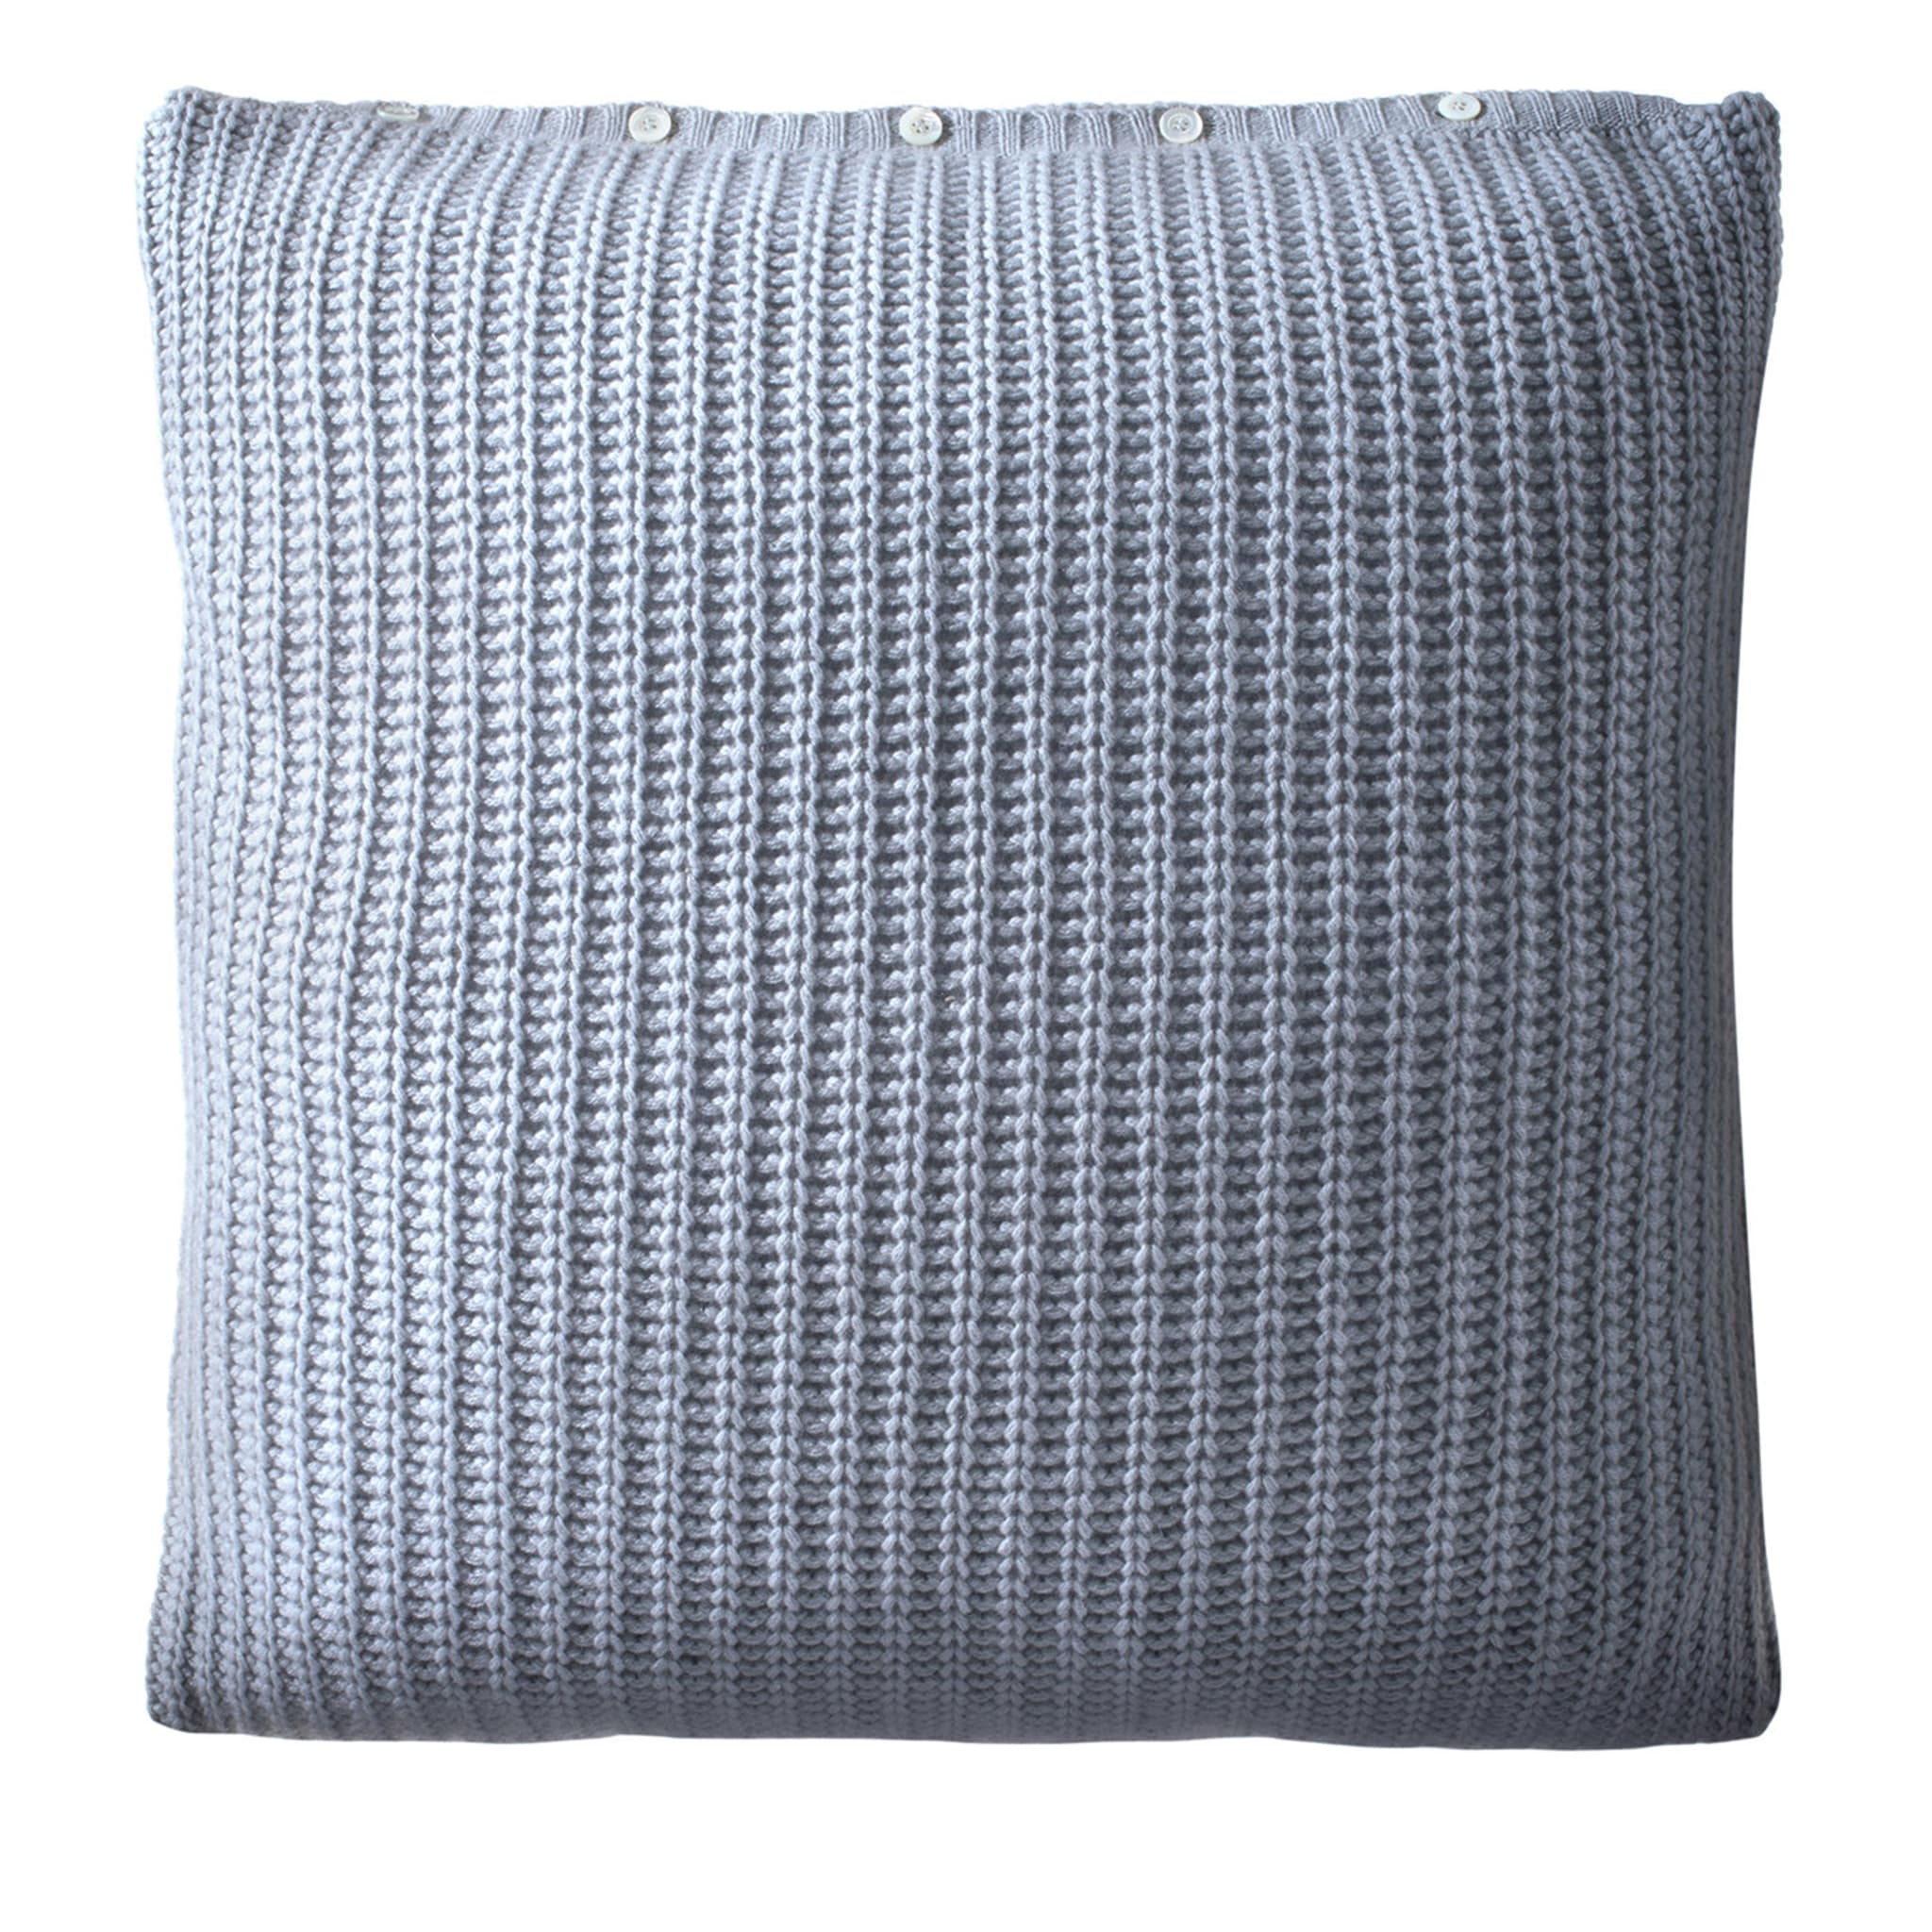 Cuscino quadrato in tricot grigio - Vista principale